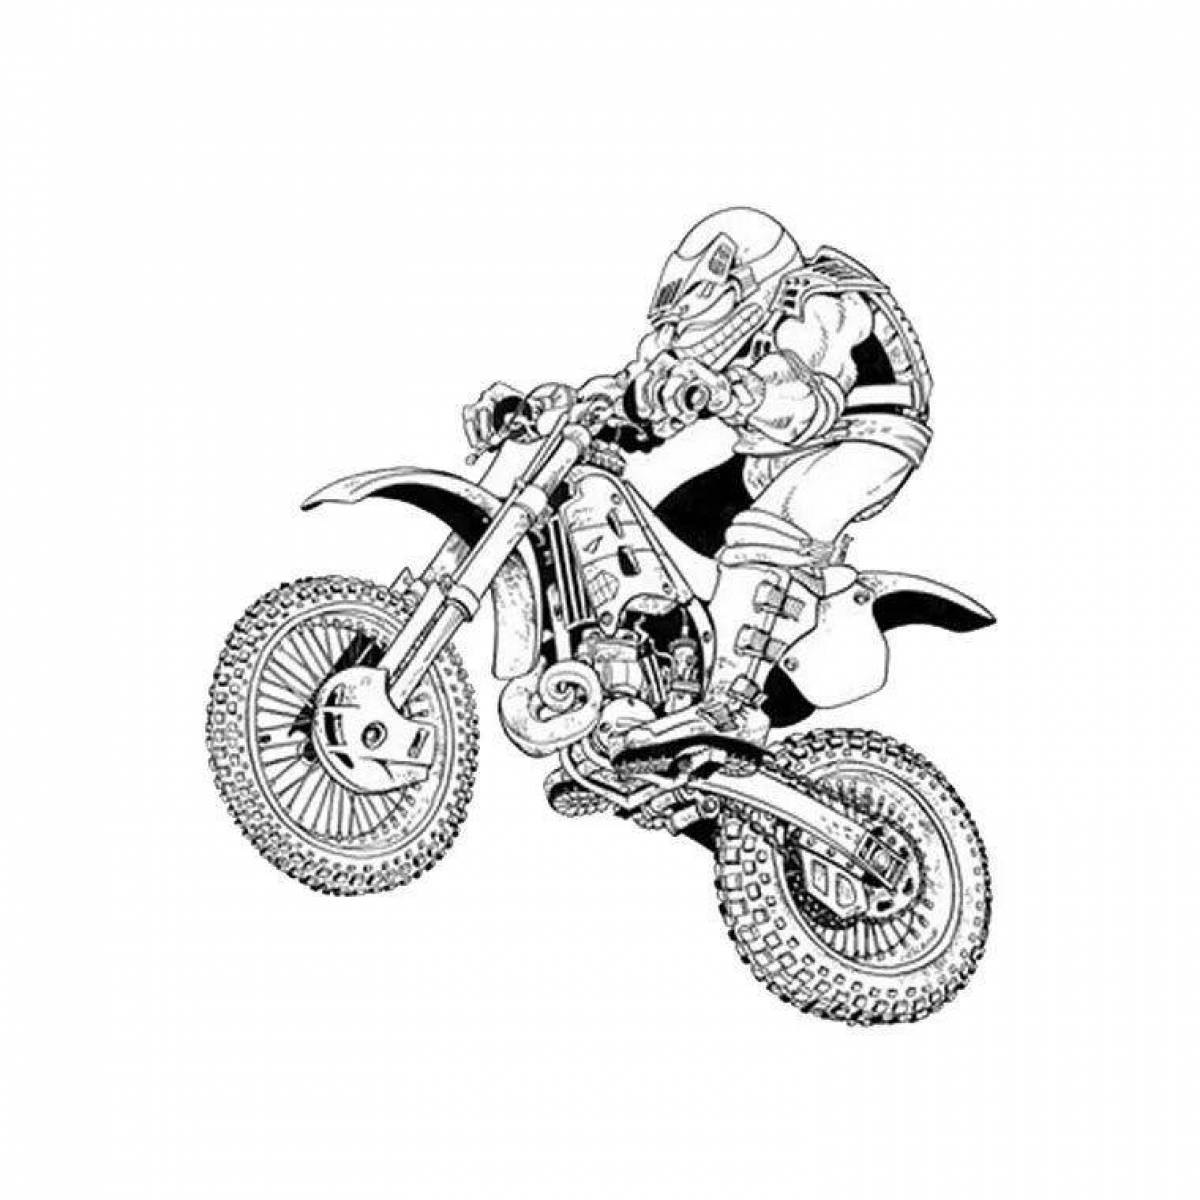 Спортивный мотоцикл Ямаха